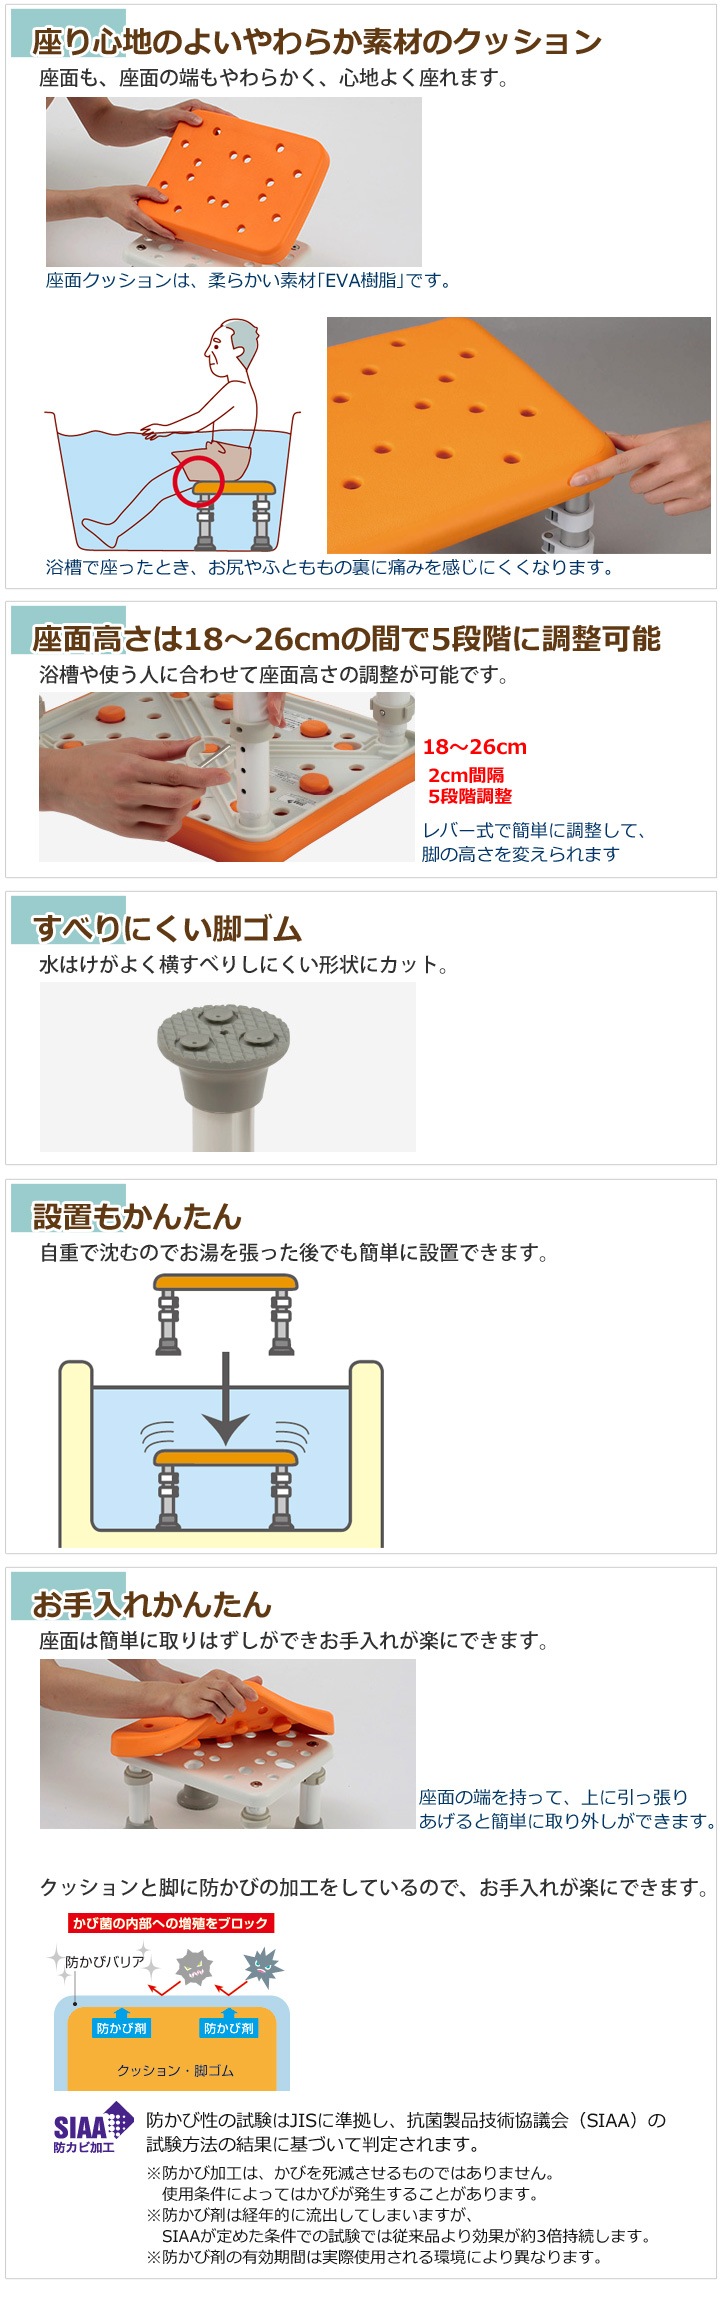 ネットオンラインストア 浴槽台[ﾕｸﾘｱ] ｿﾌﾄ ﾚｷﾞｭﾗｰ1826 ﾌﾞﾙｰPN-L11626A 入浴介助用品 FONDOBLAKA